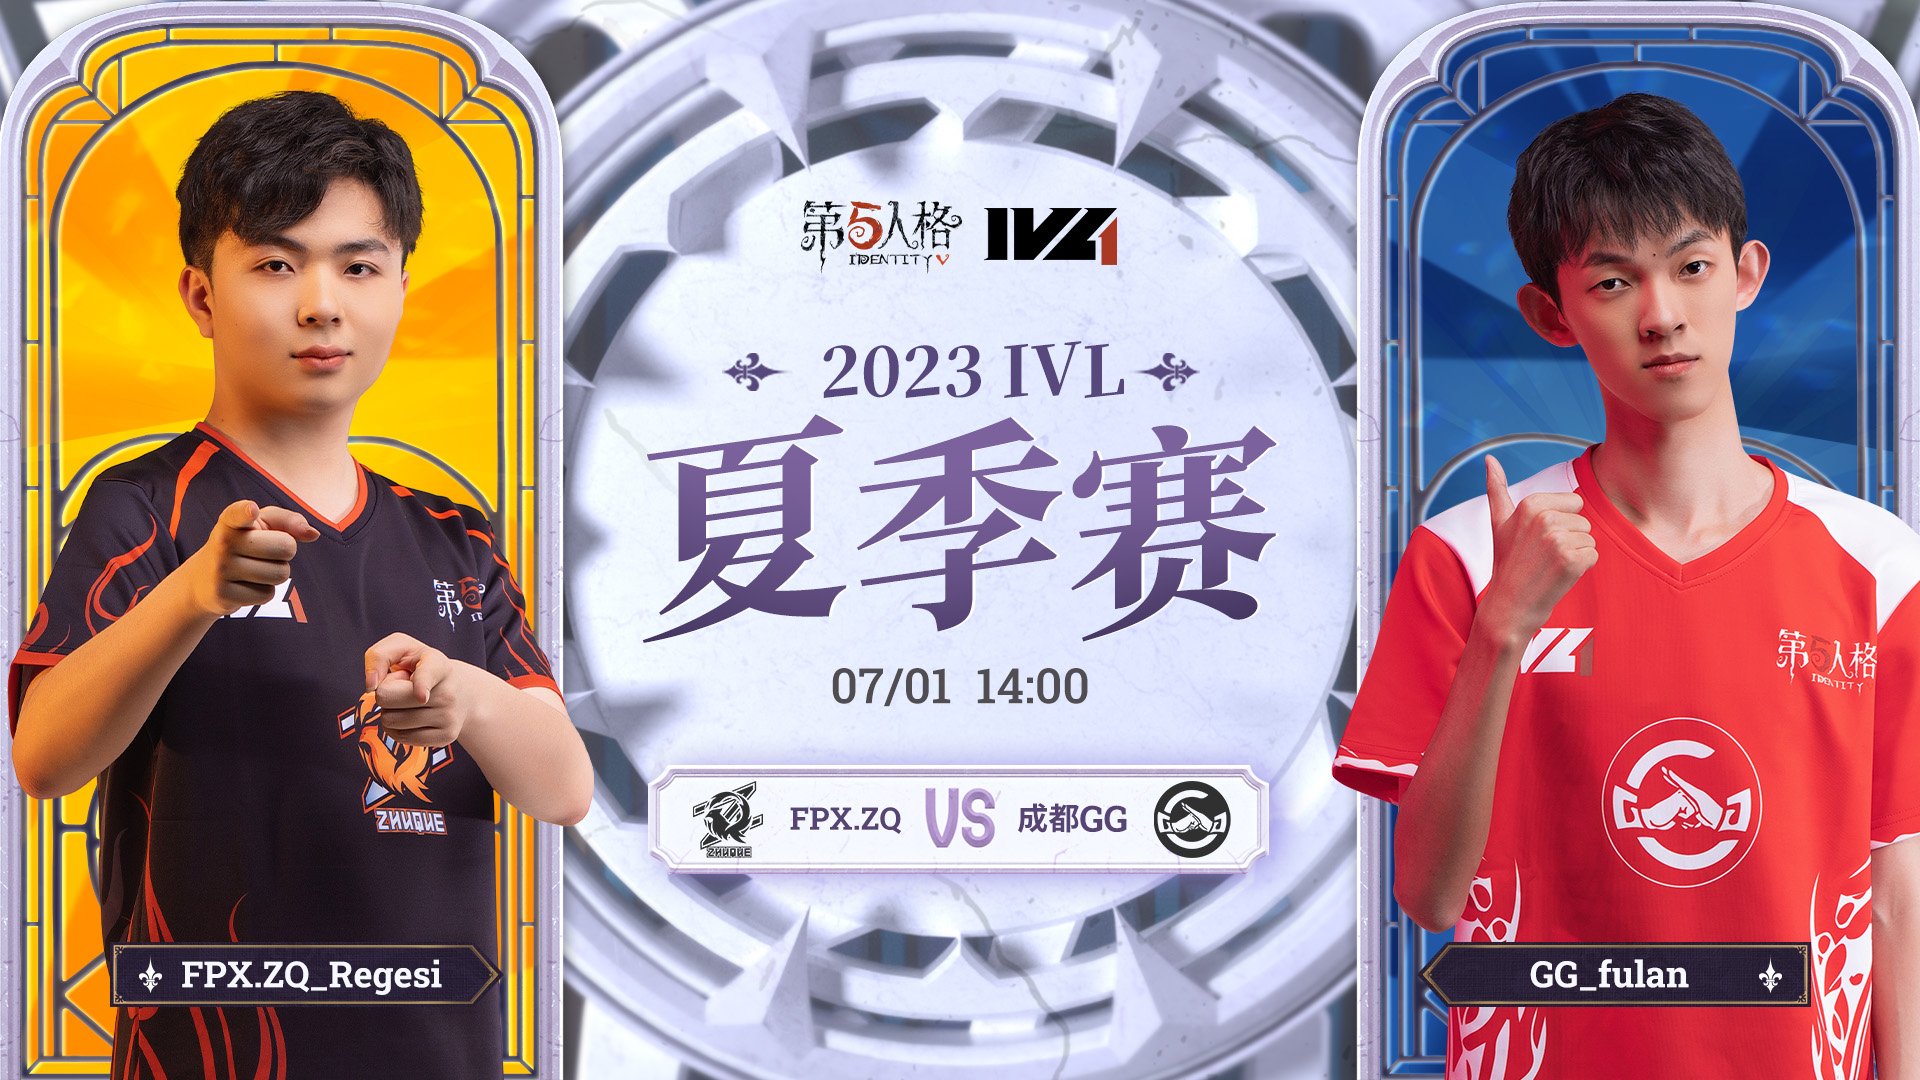 【2023IVL】夏季赛W4D2录像 FPX.ZQ vs 成都GG